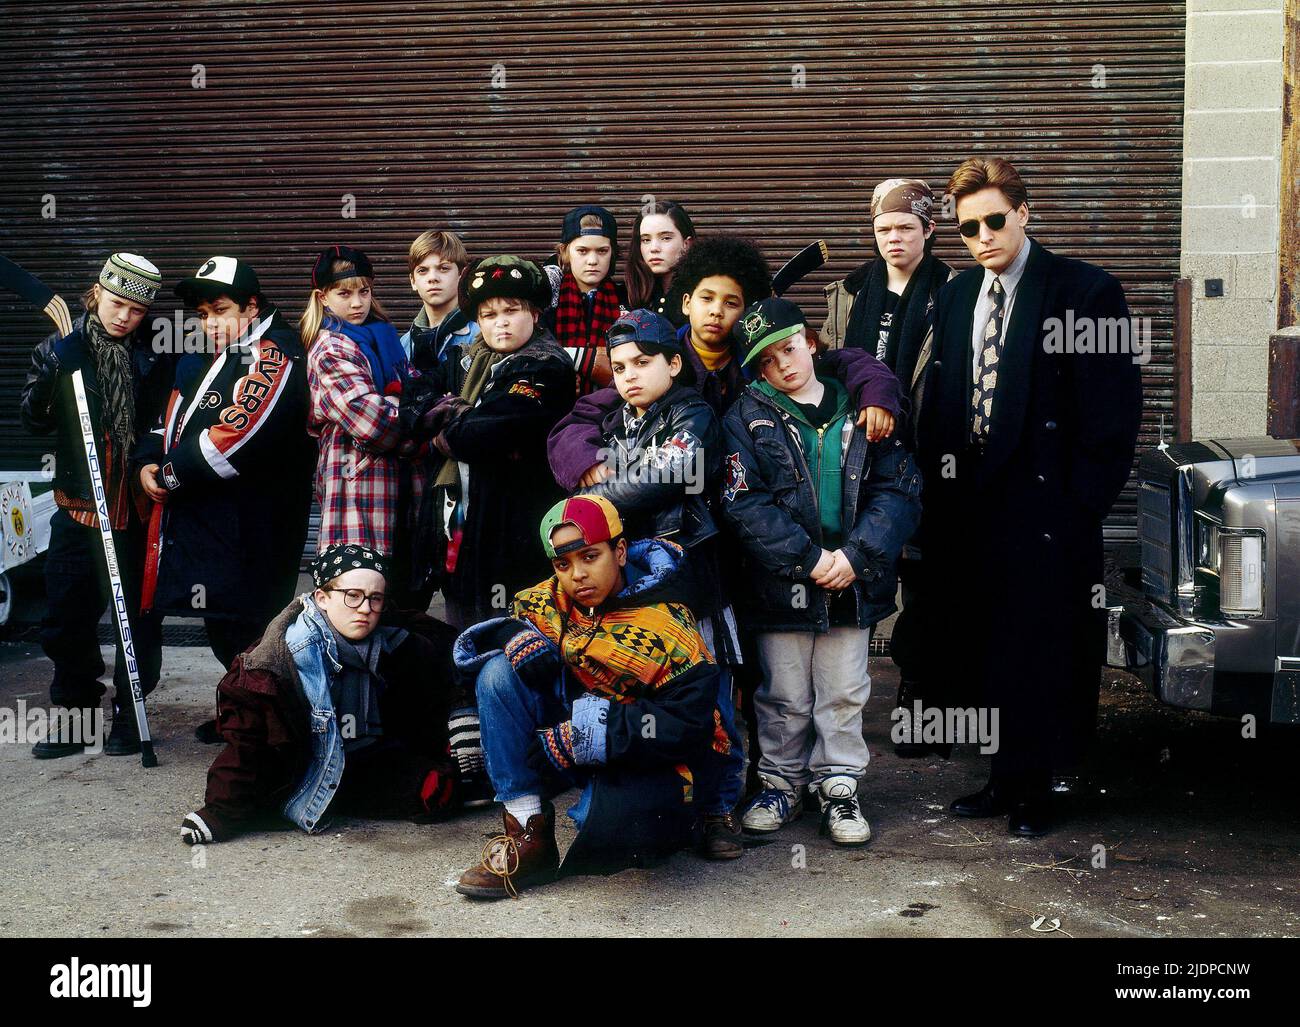 EMILIO ESTEVEZ, THE MIGHTY DUCKS, 1992 Stock Photo